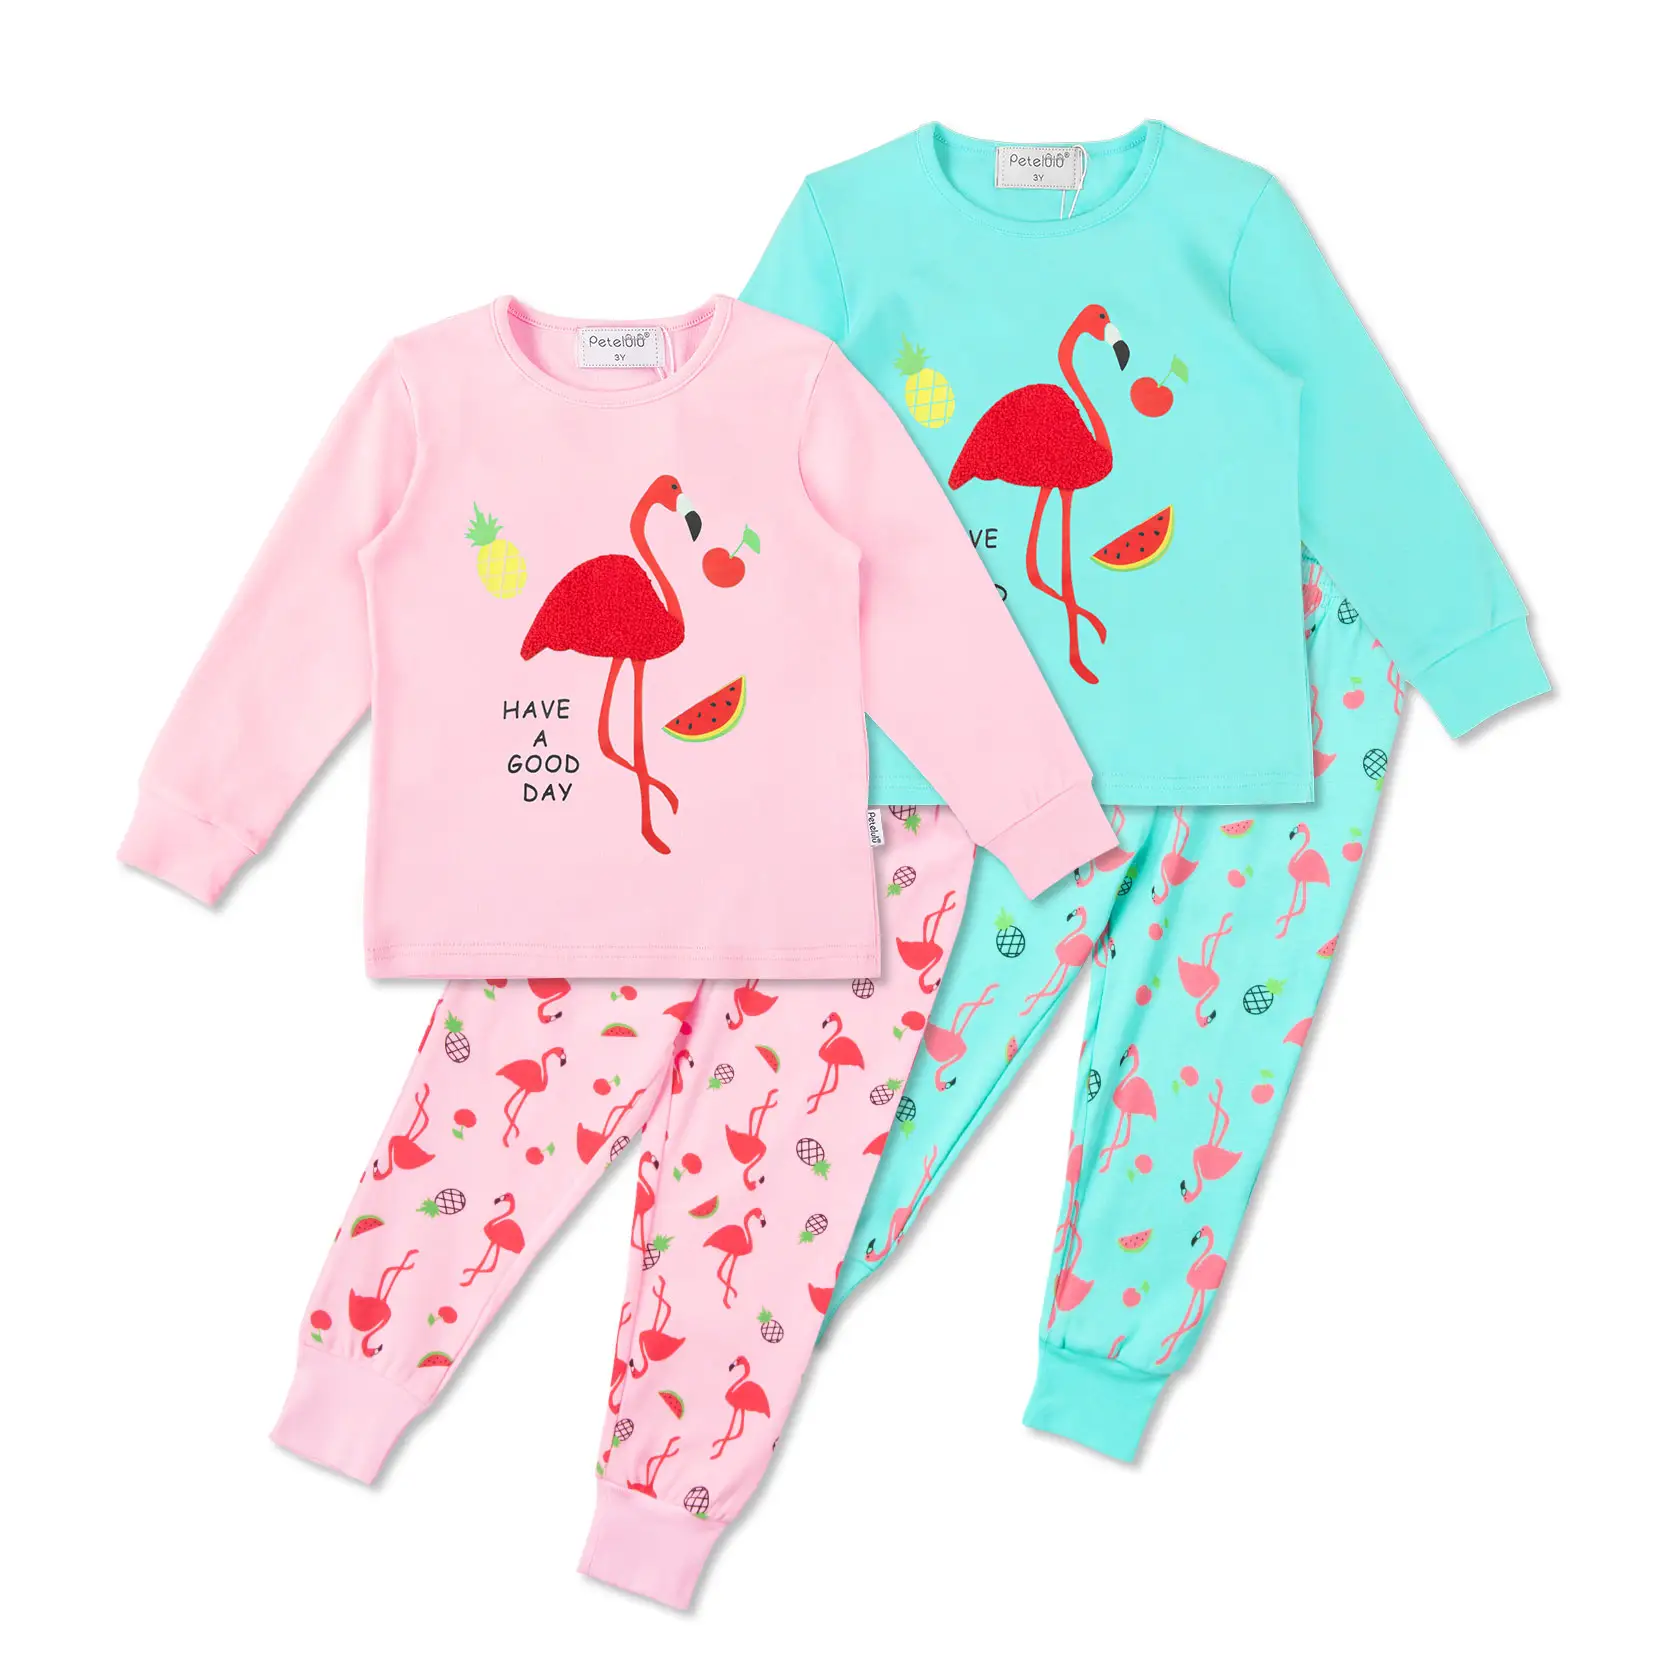 XINNE Little Kids Cotton 2 Piece Long Sleeve Pajamas Sleepwear Nightwear Set Nighty Homewear